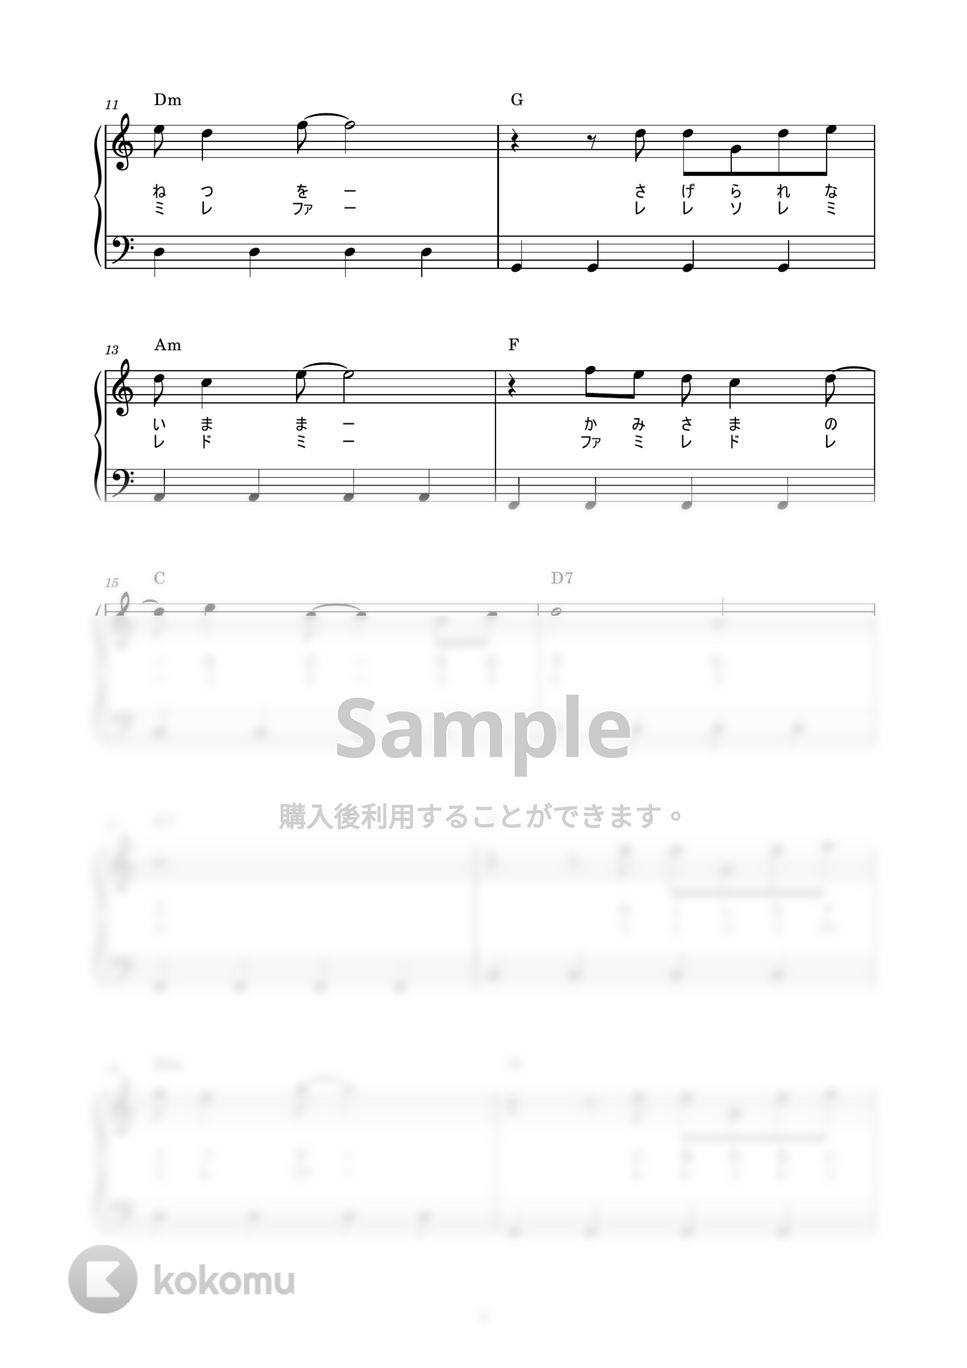 スピッツ - 空も飛べるはず (かんたん / 歌詞付き / ドレミ付き / 初心者) by piano.tokyo